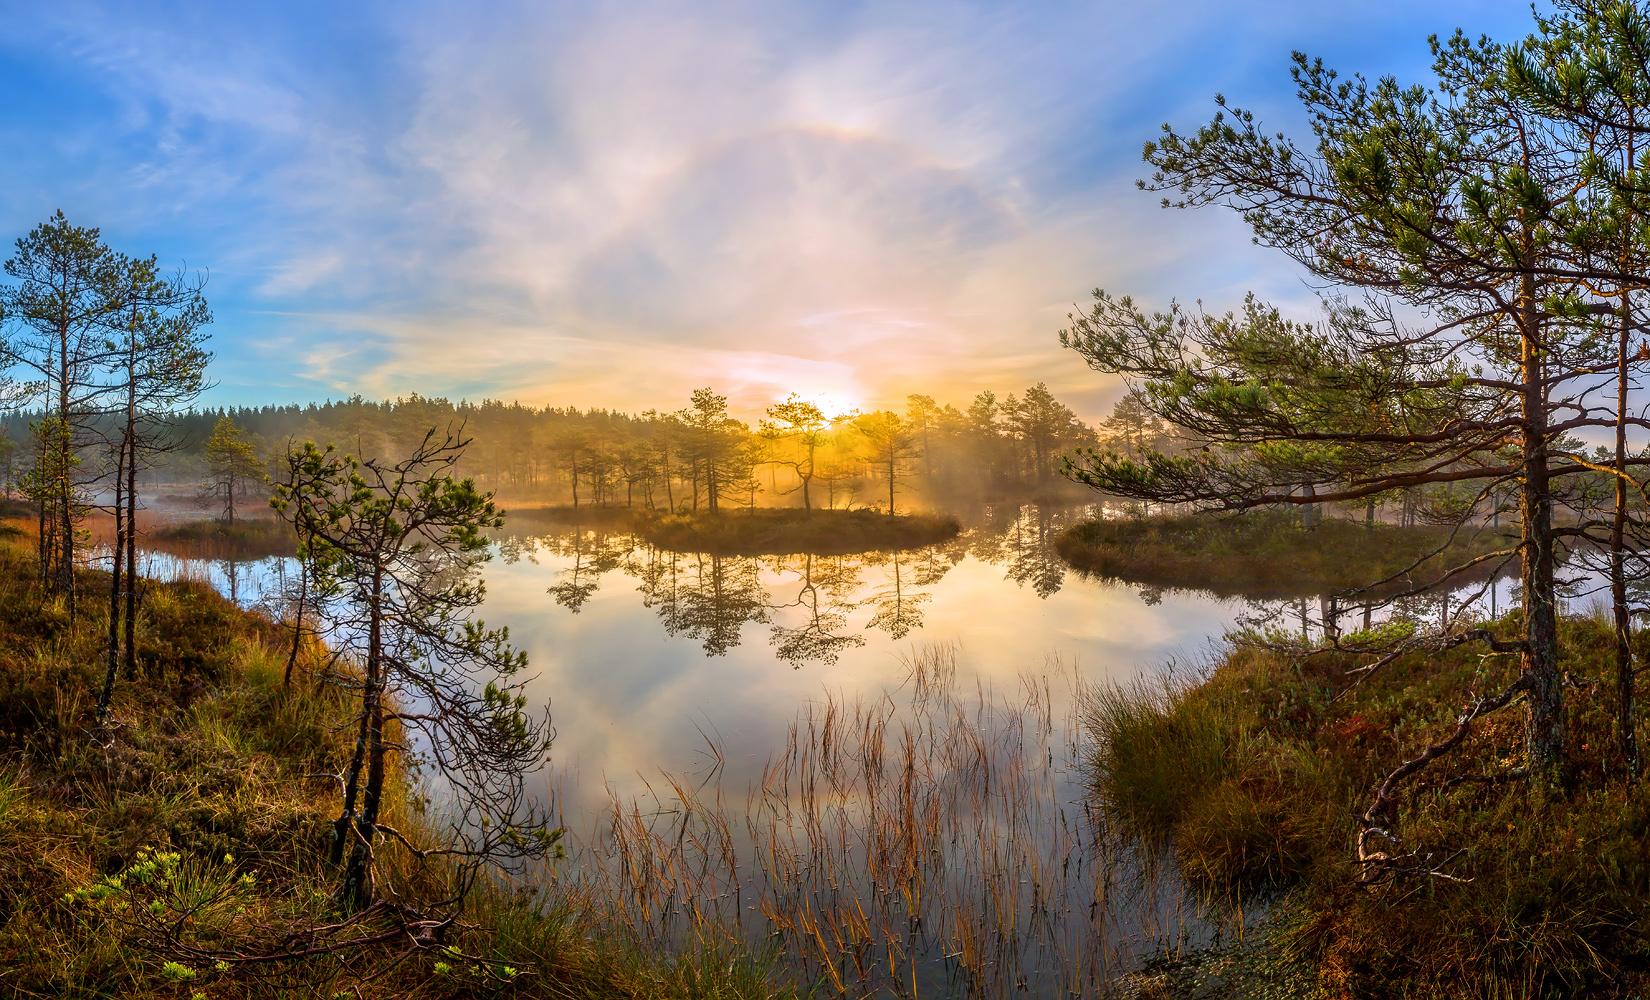 Лёгкость чистого утра фототур Ленинградская область деревья сосна болото рассвет осень гало туман остров отражение покой